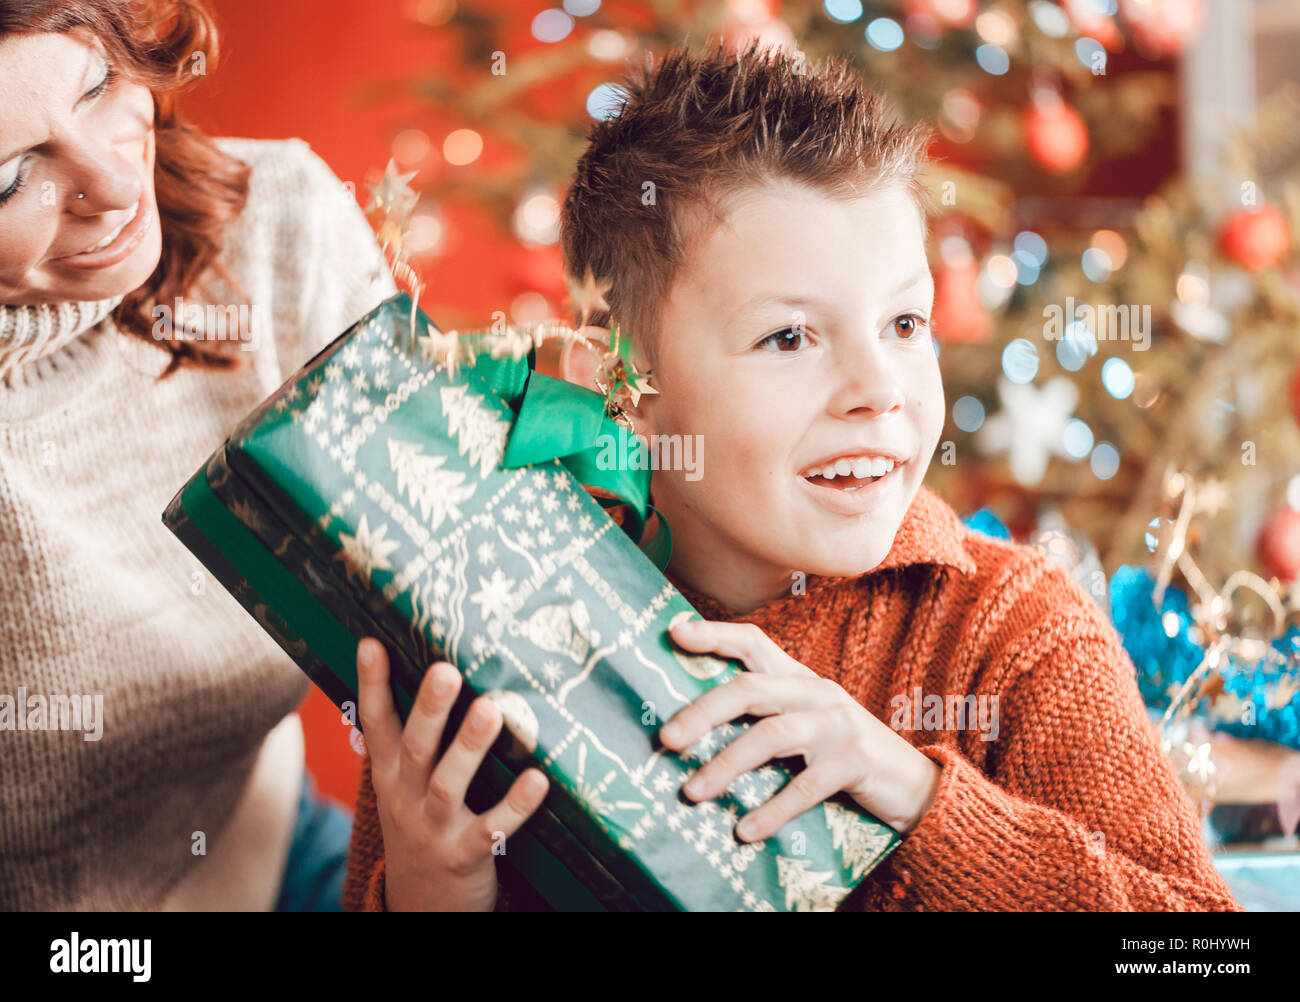 Weihnachten, Happy Family, Sohn und Mutter, Geschenke auspacken  Stockfotografie - Alamy